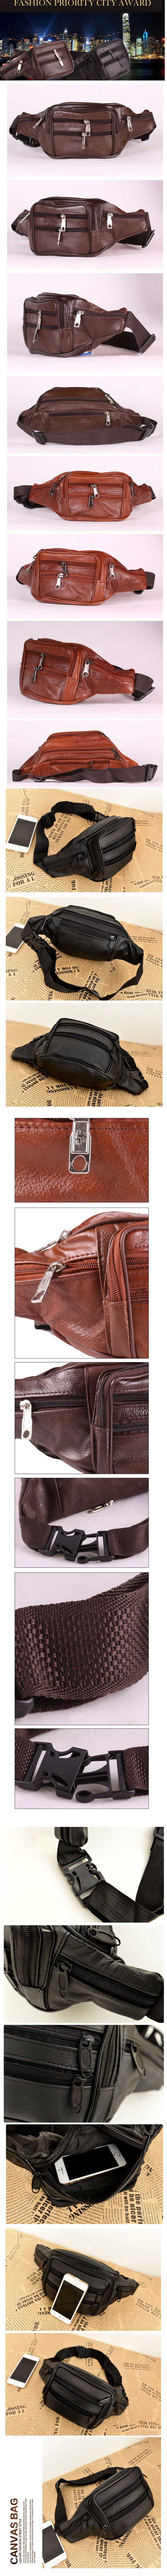 jual tas pinggang kulit pria, model tas pinggang ini kecil dan sangat cocok dipakai untuk membawa gadget pada saat diluar rumah, temukan koleksi tas pinggang kulit terlengkap disini